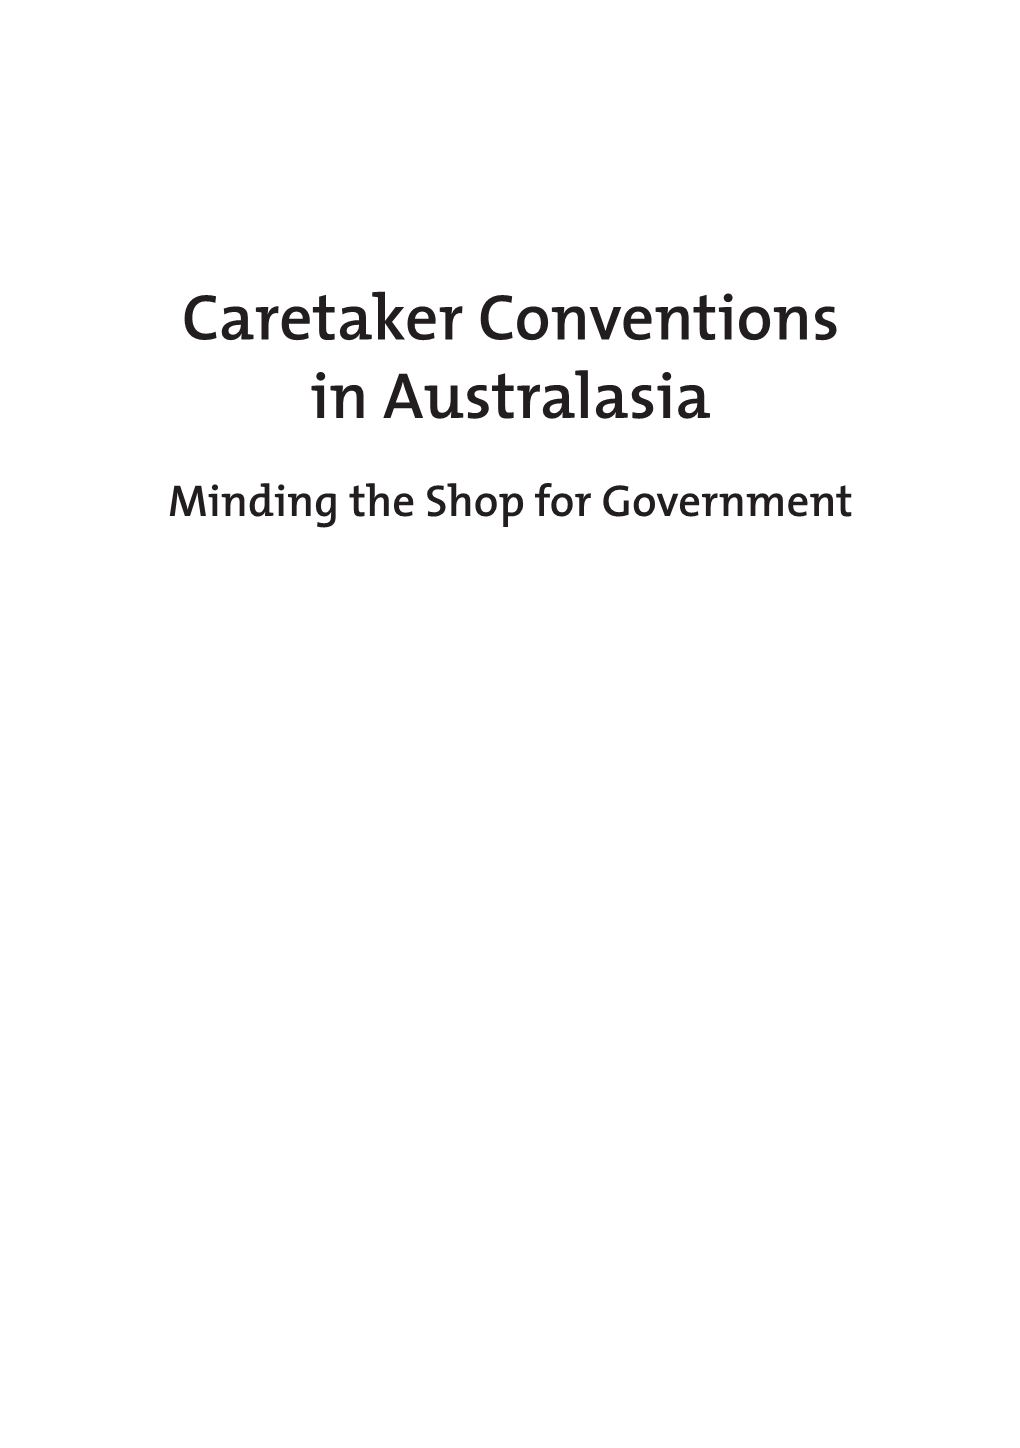 Caretaker Conventions in Australasia